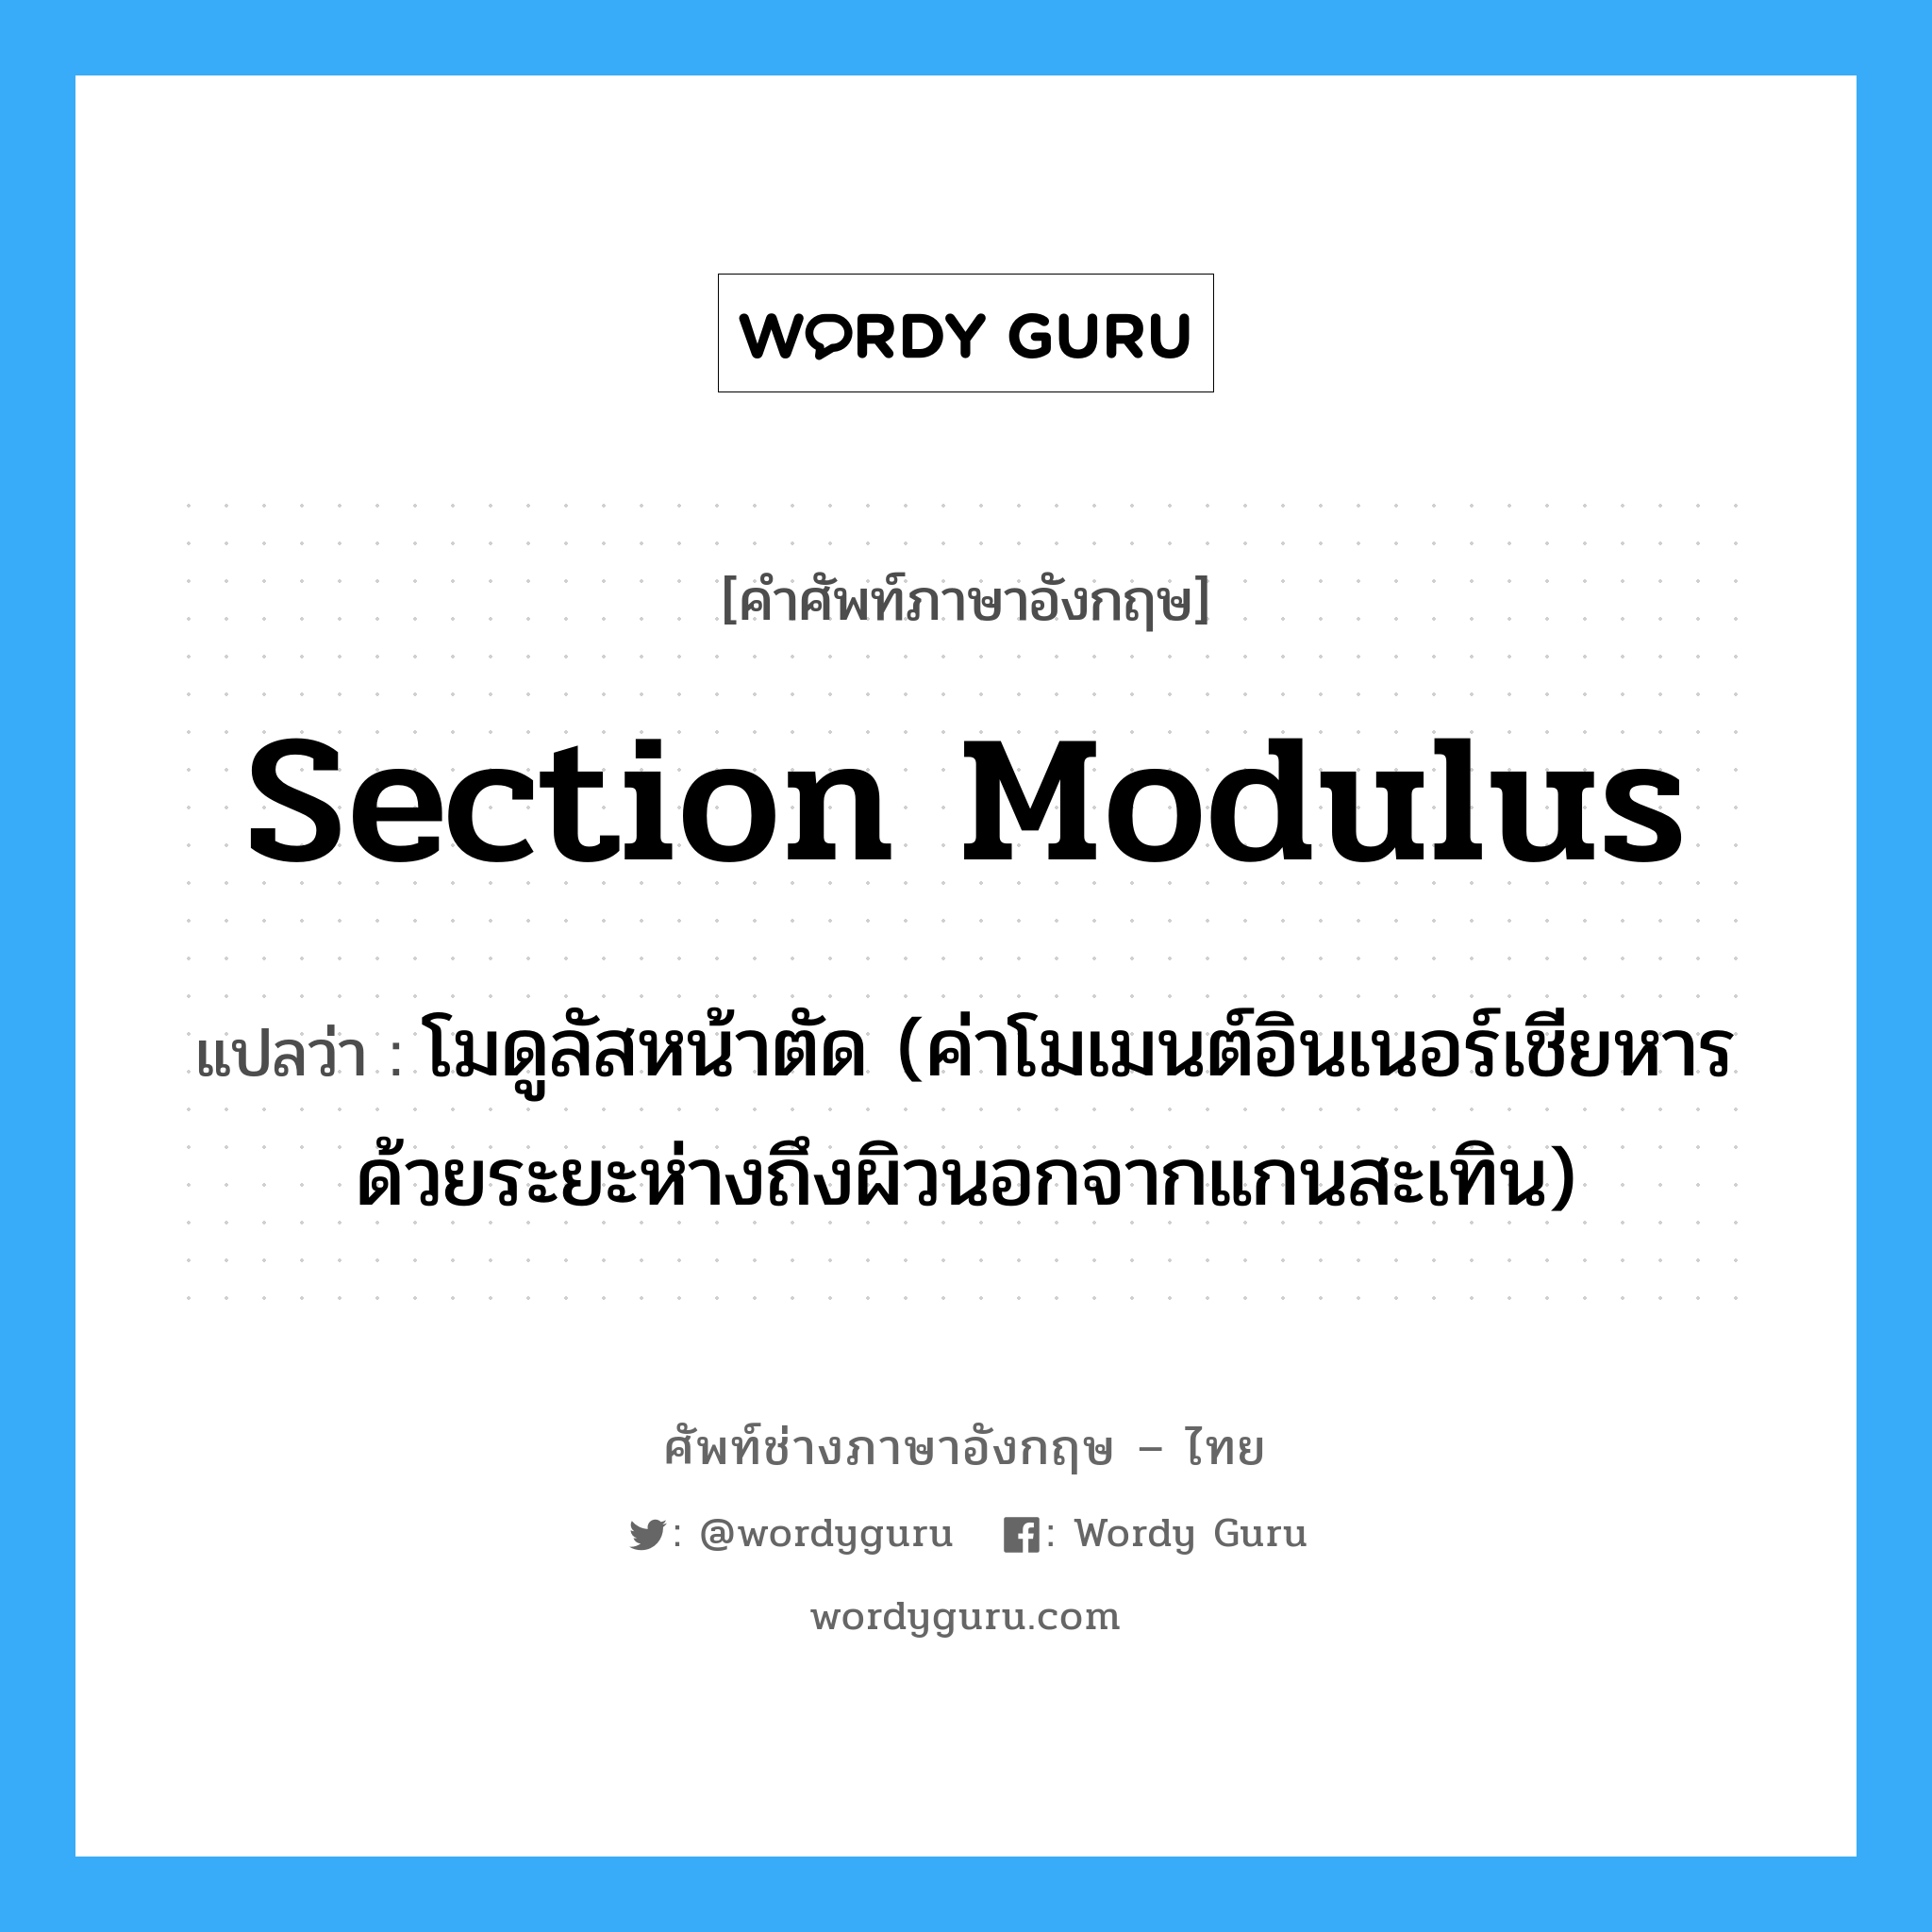 Section Modulus: แปลว่า?, คำศัพท์ช่างภาษาอังกฤษ - ไทย section modulus คำศัพท์ภาษาอังกฤษ section modulus แปลว่า โมดูลัสหน้าตัด (ค่าโมเมนต์อินเนอร์เชียหารด้วยระยะห่างถึงผิวนอกจากแกนสะเทิน)